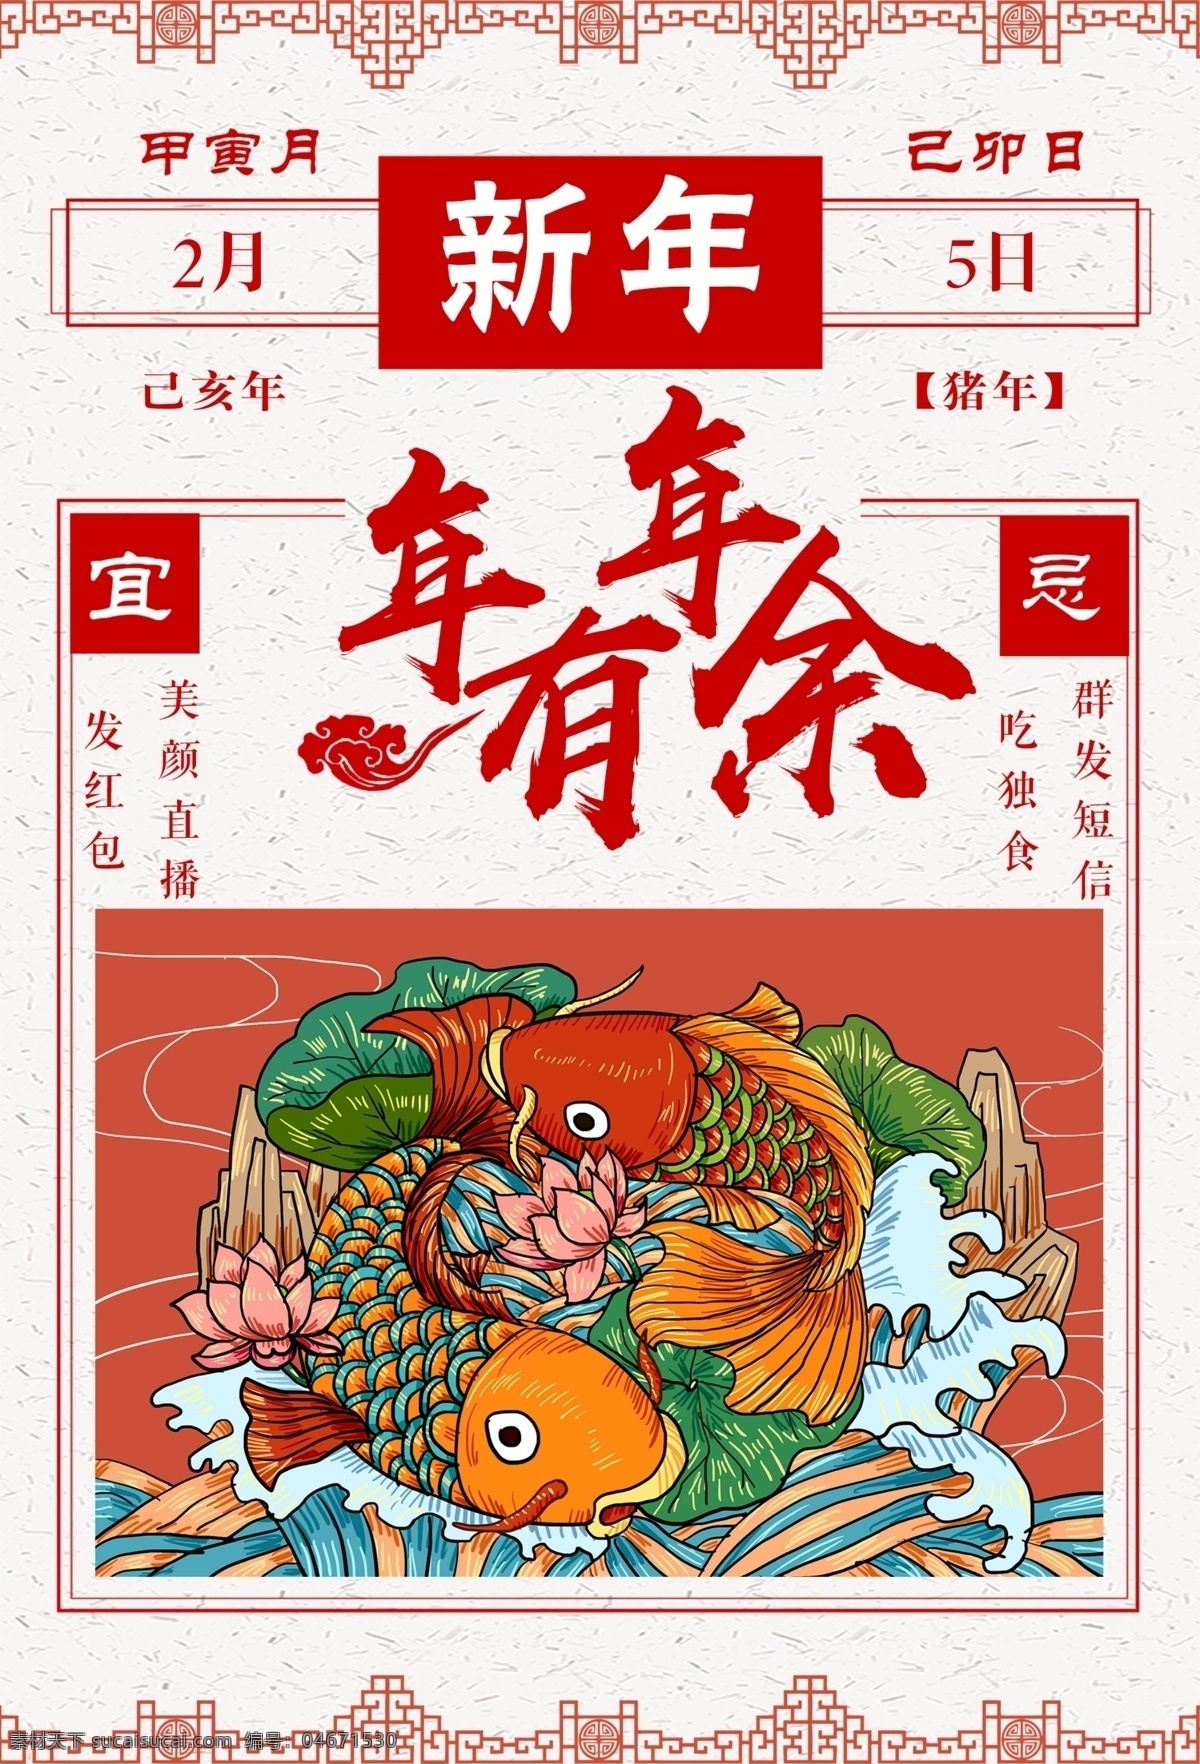 中国 风 节日 剪纸 画 动物 形象 窗花 挂件 矢量 剪纸画 艺术 展示 中国风 生肖 边框 卡通设计